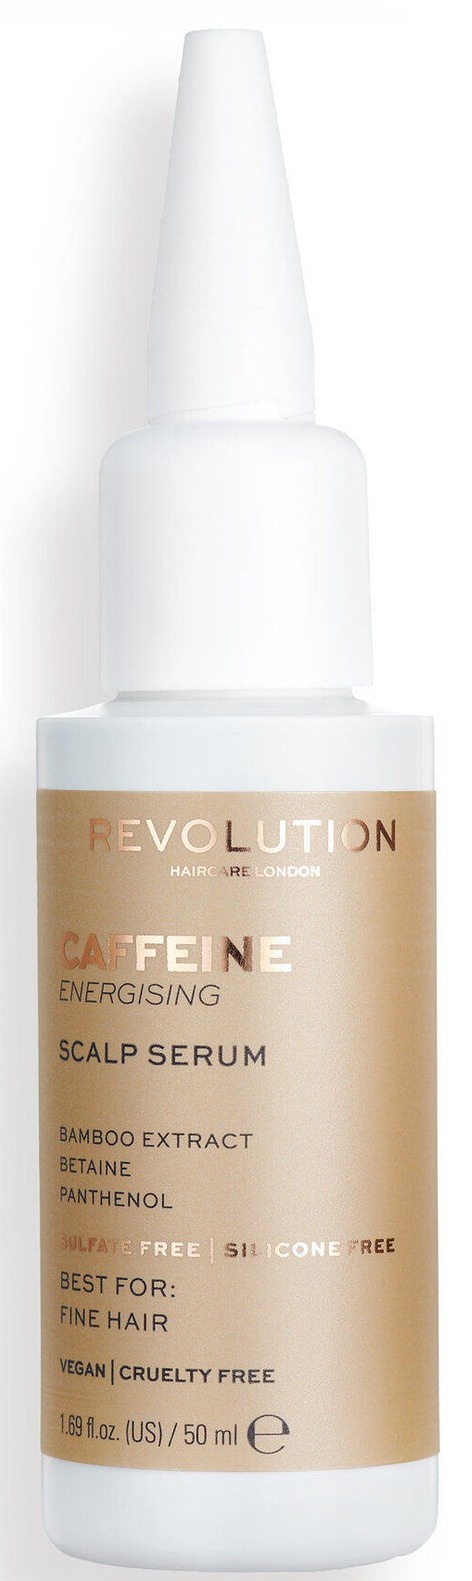 Revolution HairCare Caffeine Energising Scalp Serum For Fine Hair